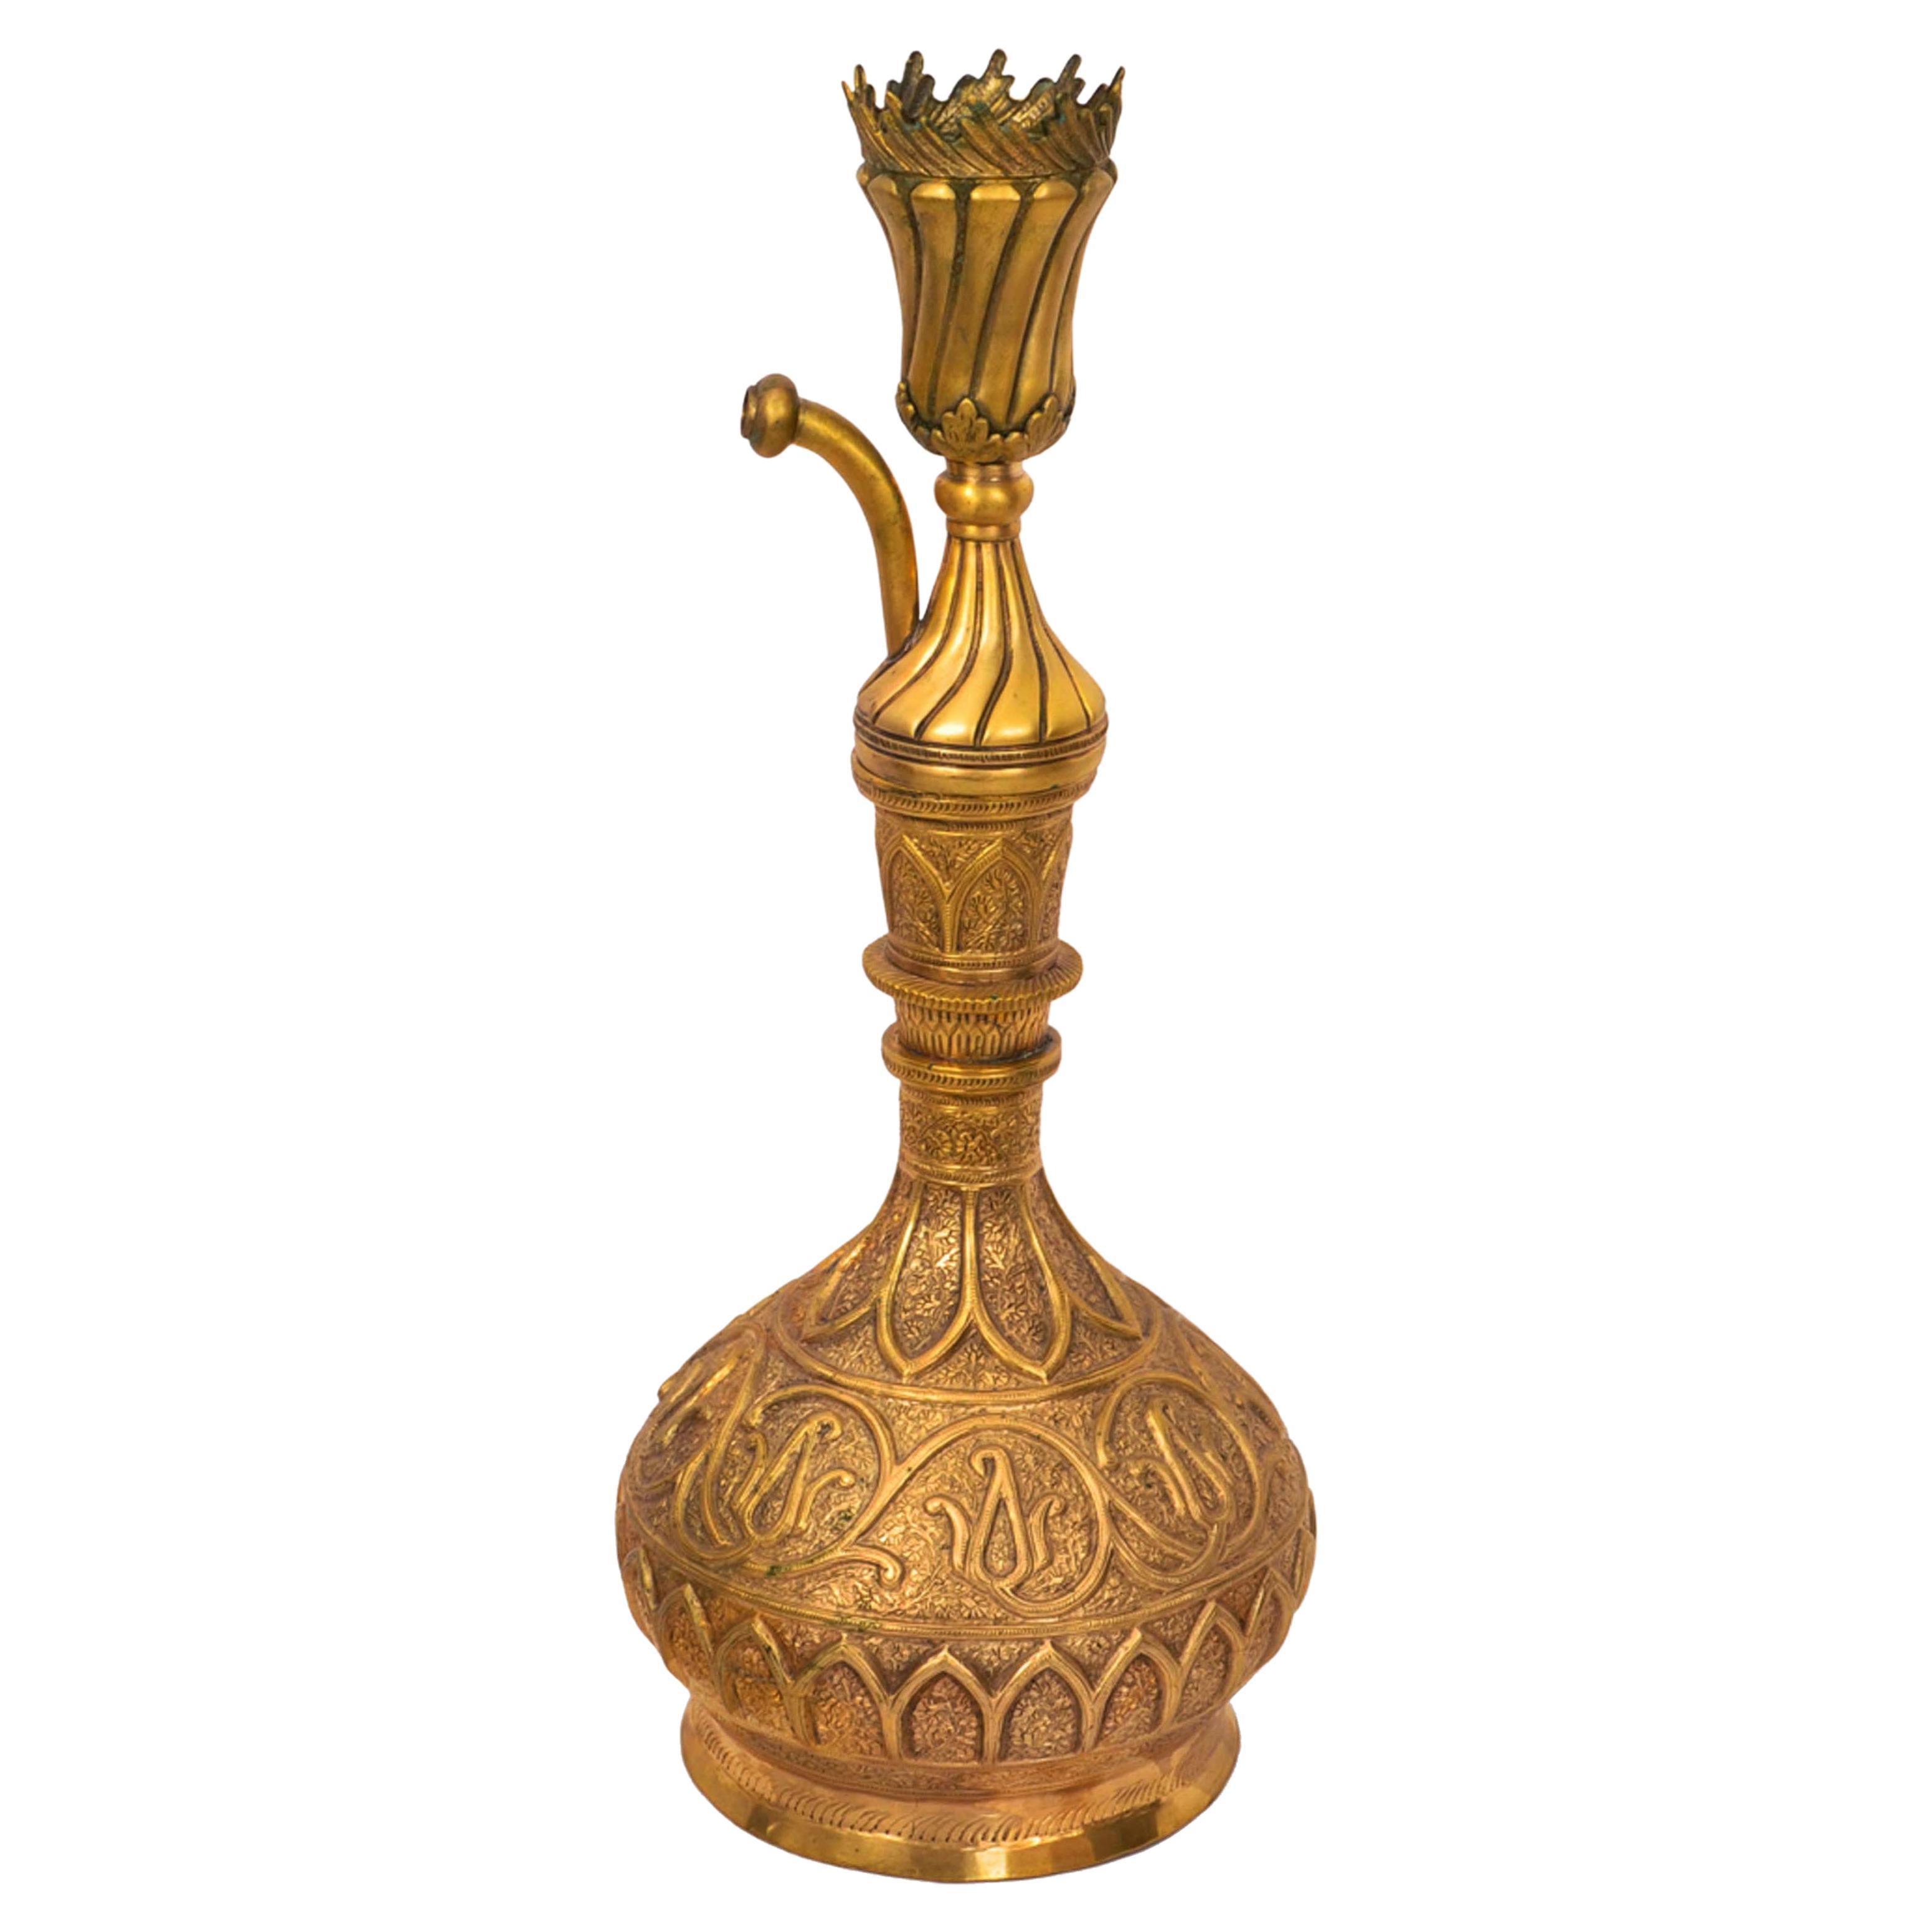 Eine schöne und seltene antike osmanische Tombak (vergoldetes Kupfer) Nargile oder Hookah-Pfeife des 19. Jahrhunderts, Türkei, um 1850.
Die Geschichte der Nagile oder Wasserpfeife reicht bis ins 16. Jahrhundert zurück, diese sehr feine Tombak- oder